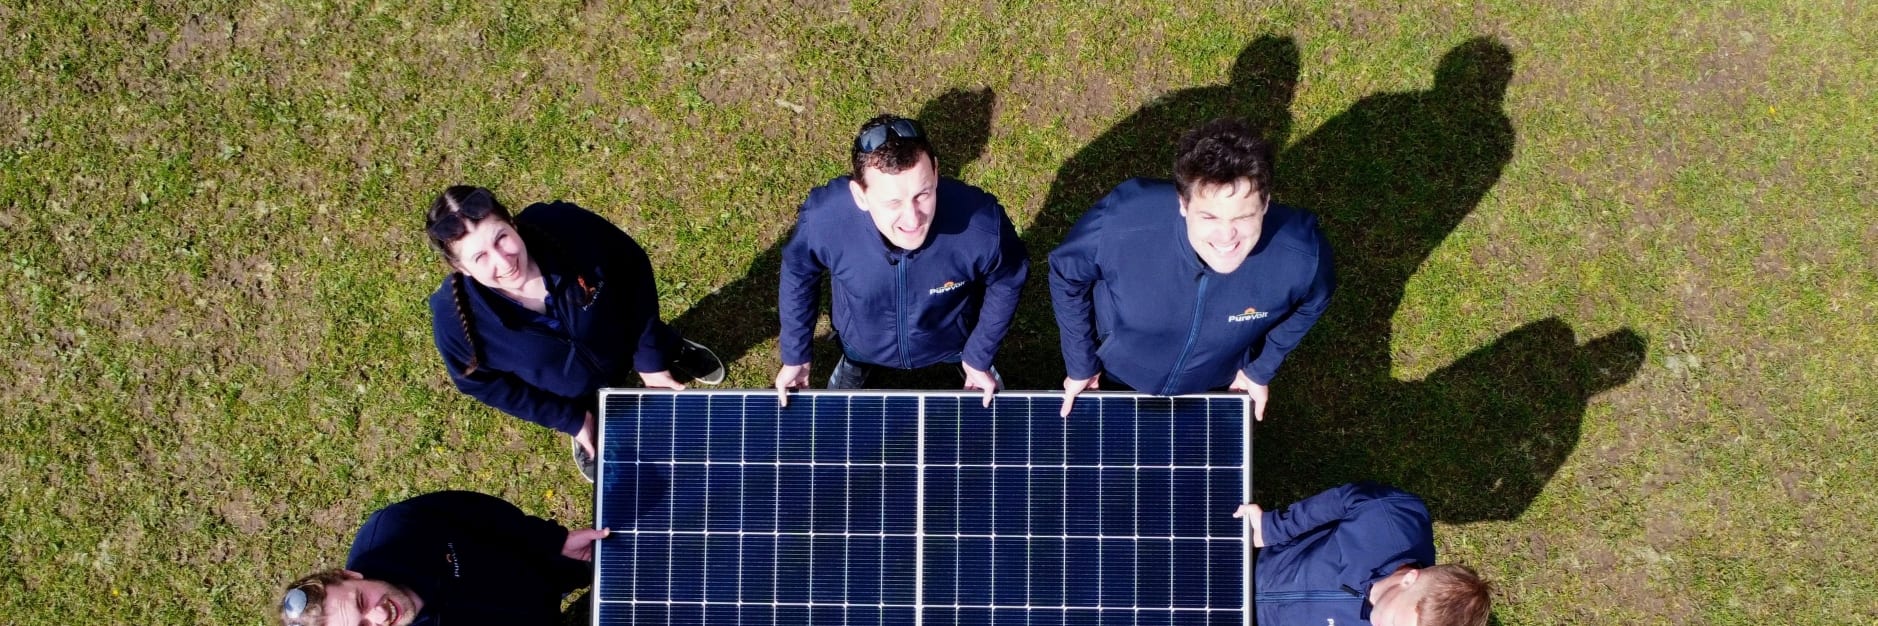 PureVolt solar team members